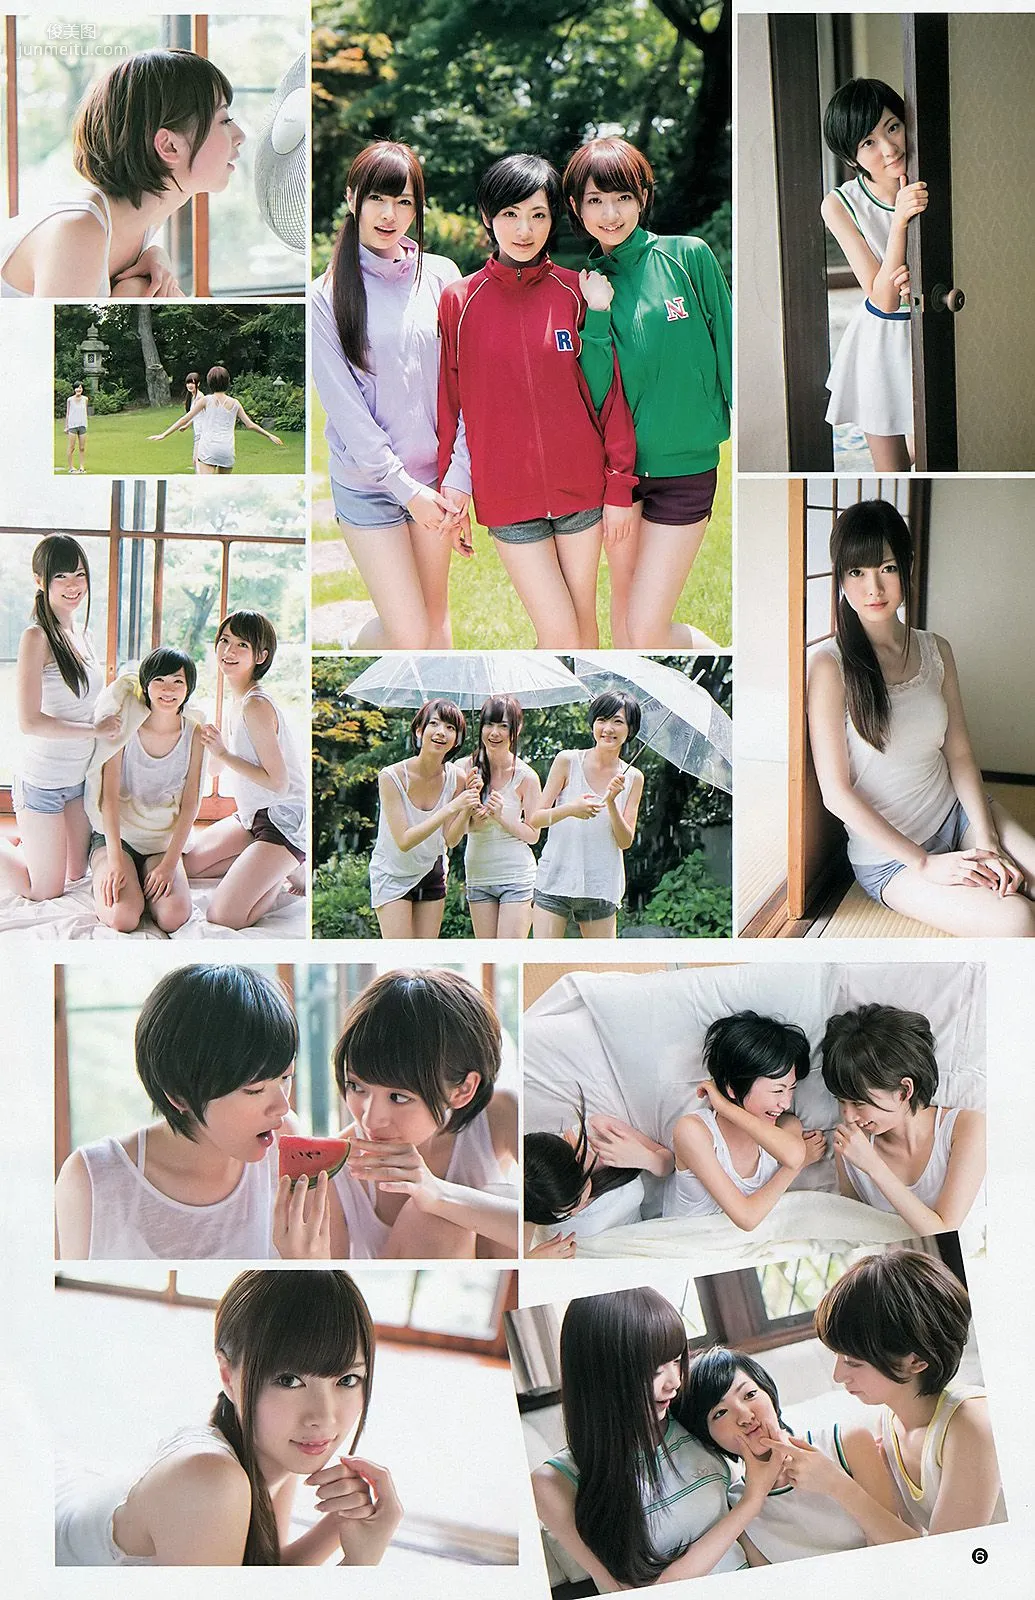 大島優子 乃木坂46 AKB48 ウェイティングガールズ [Weekly Young Jump] 2012年No.40 写真杂志14